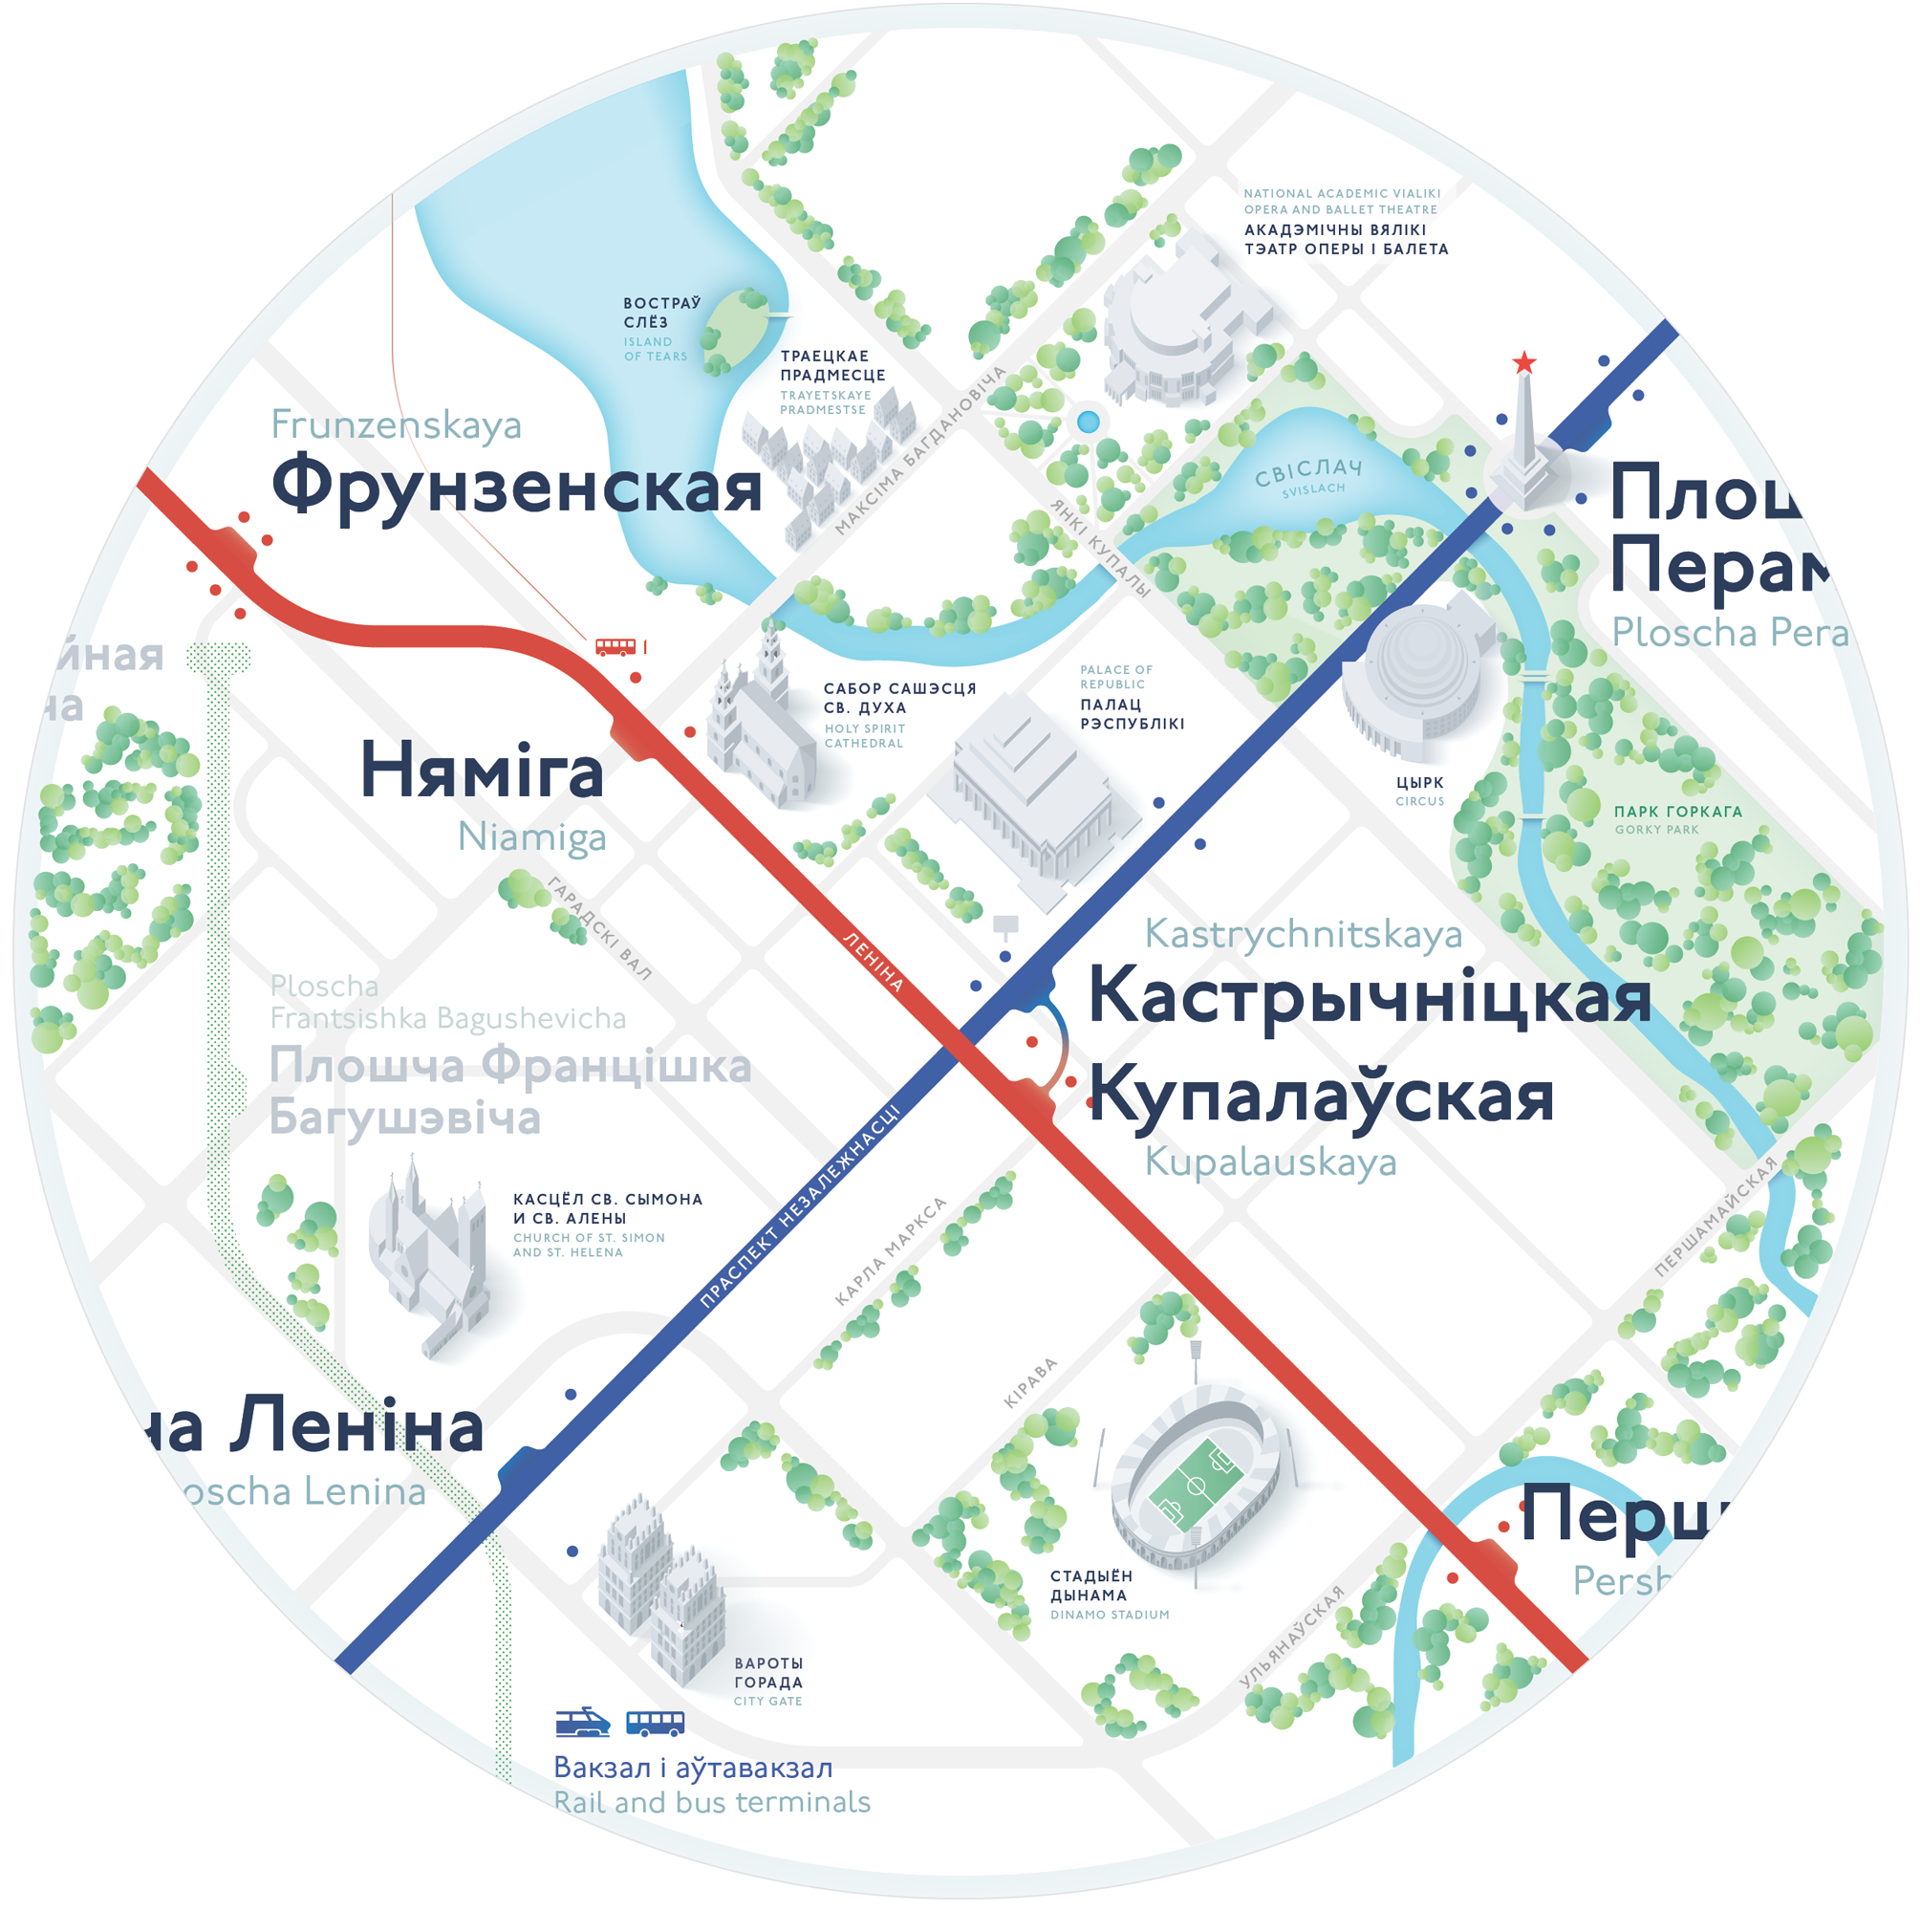 Схема метро москвы 2020 скачать в хорошем качестве